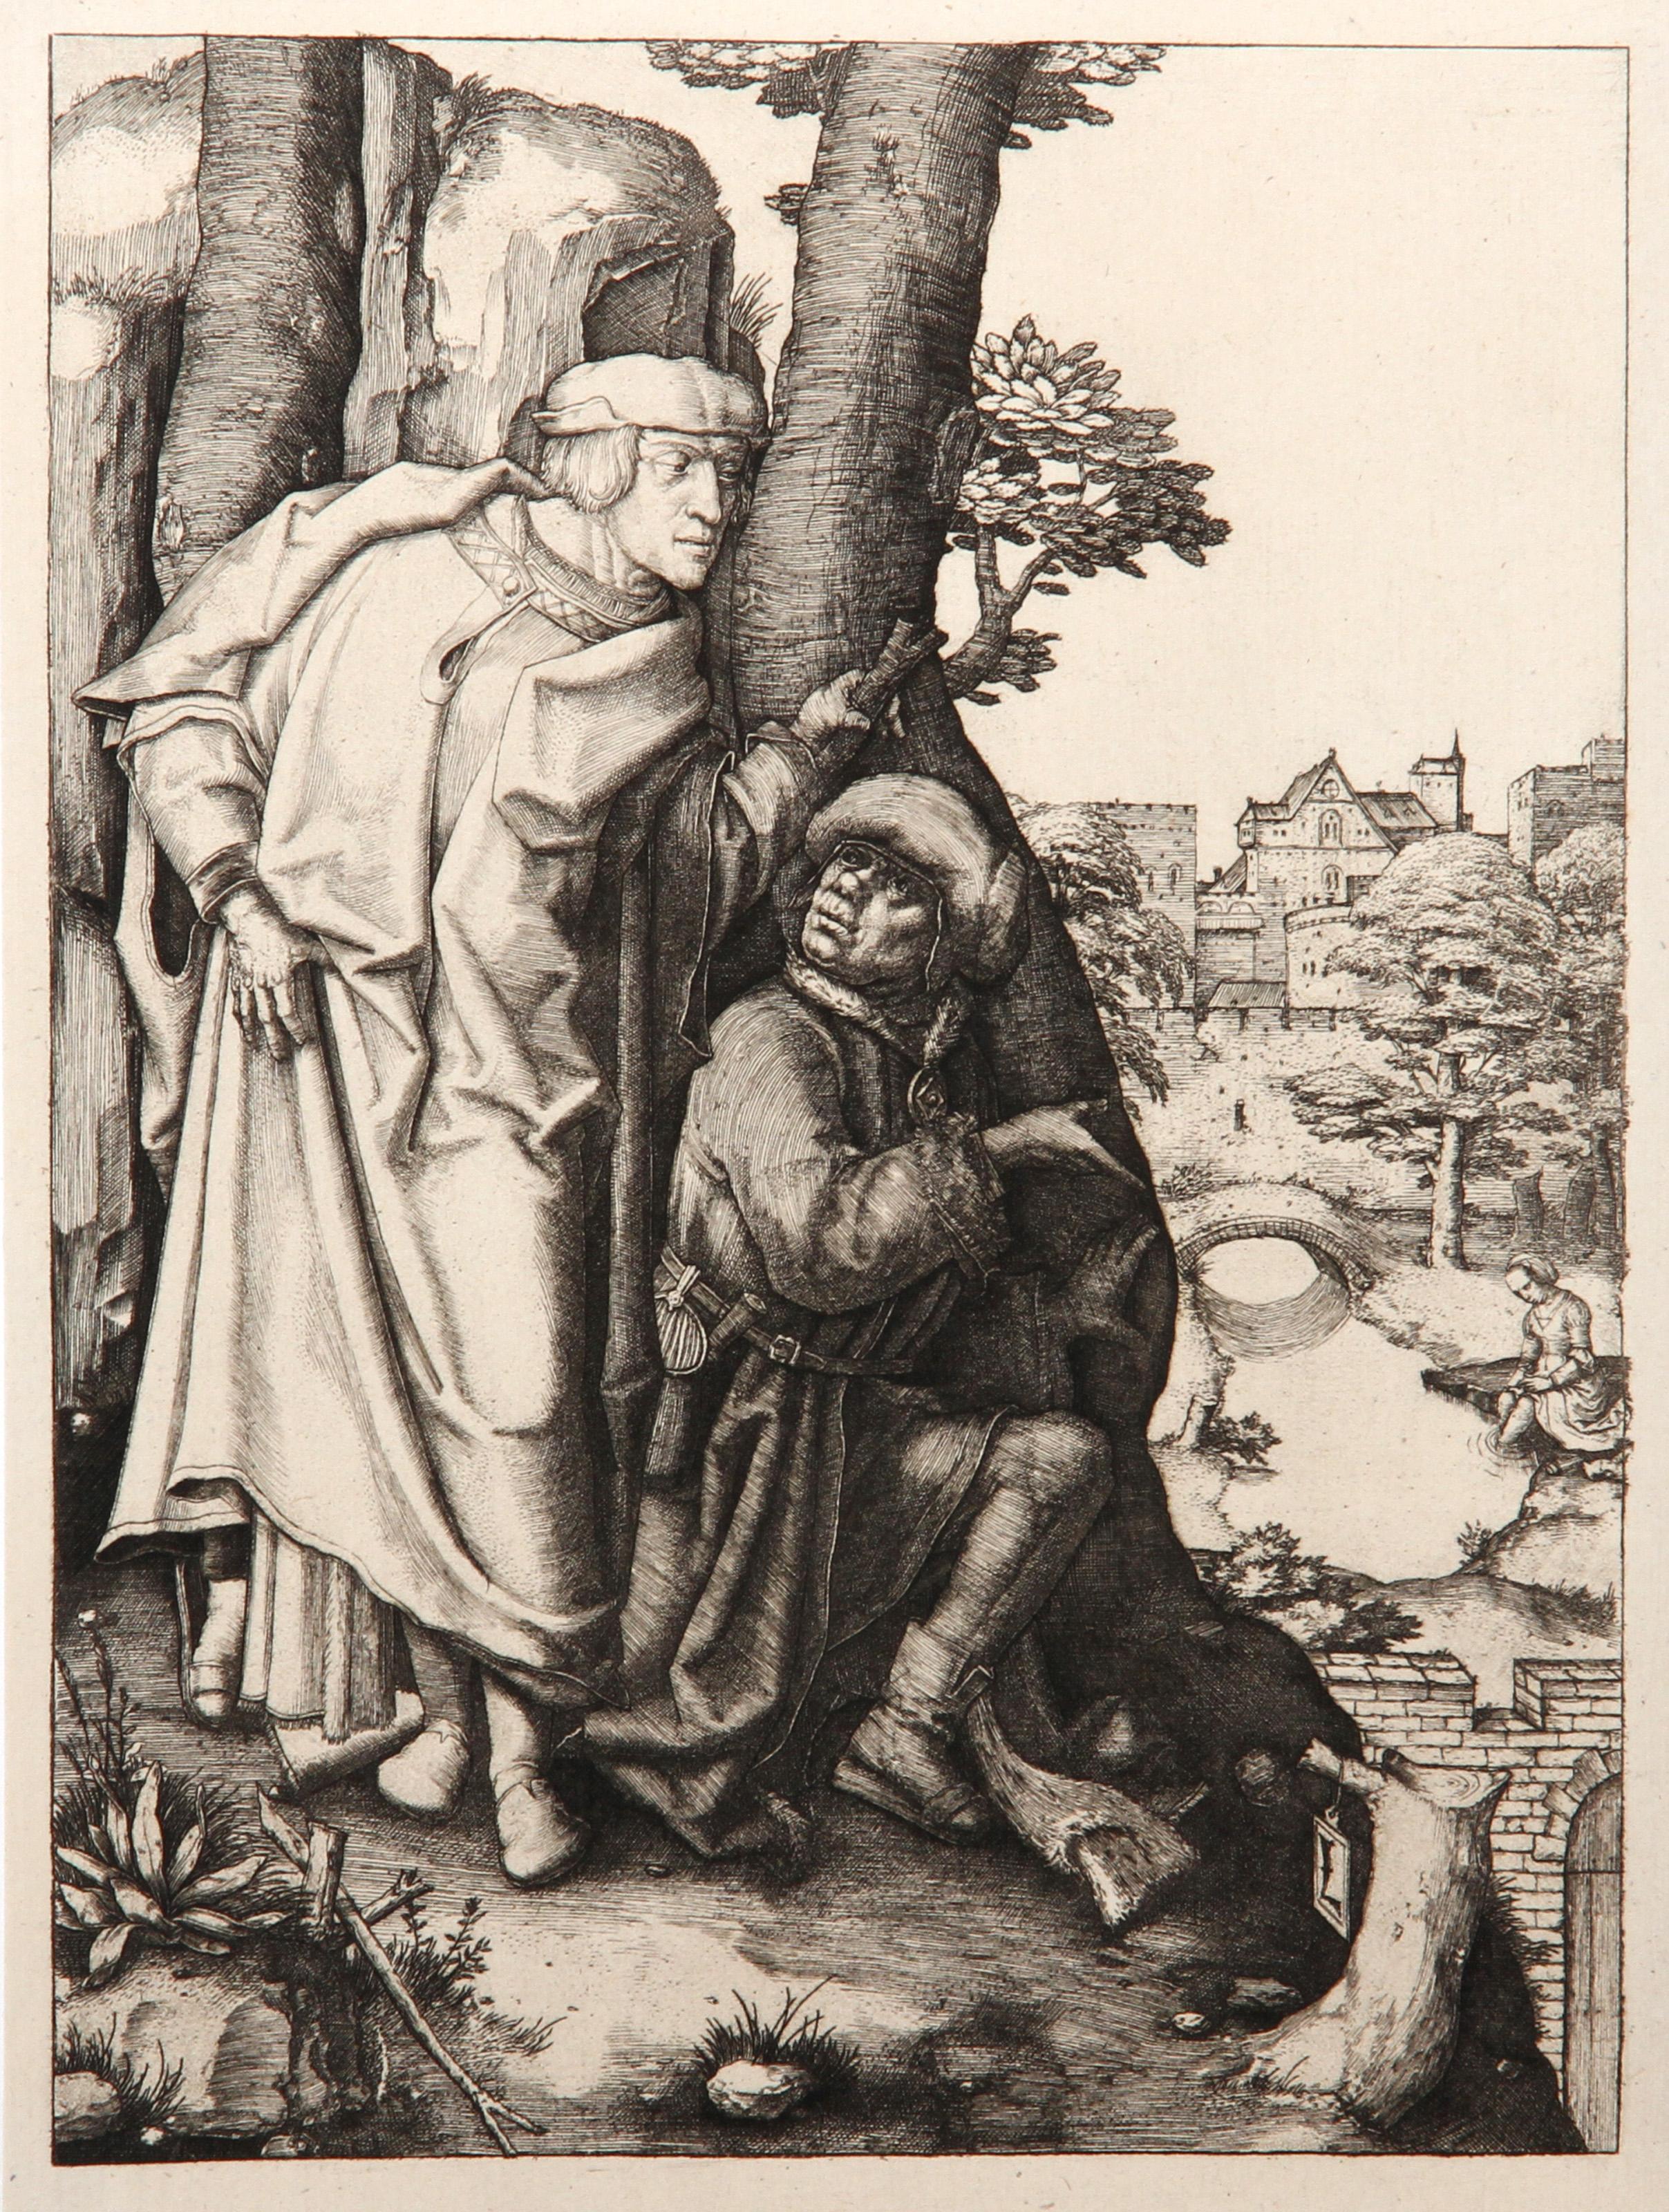 Artist: Lucas van Leyden, After by Amand Durand, Dutch (1494 - 1533) - Les deux Vieillards appercevant Susanne au bain, Year: 1873, Medium: Heliogravure, Size: 8.25  x 6 in. (20.96  x 15.24 cm), Printer: Amand Durand, Description: French Engraver